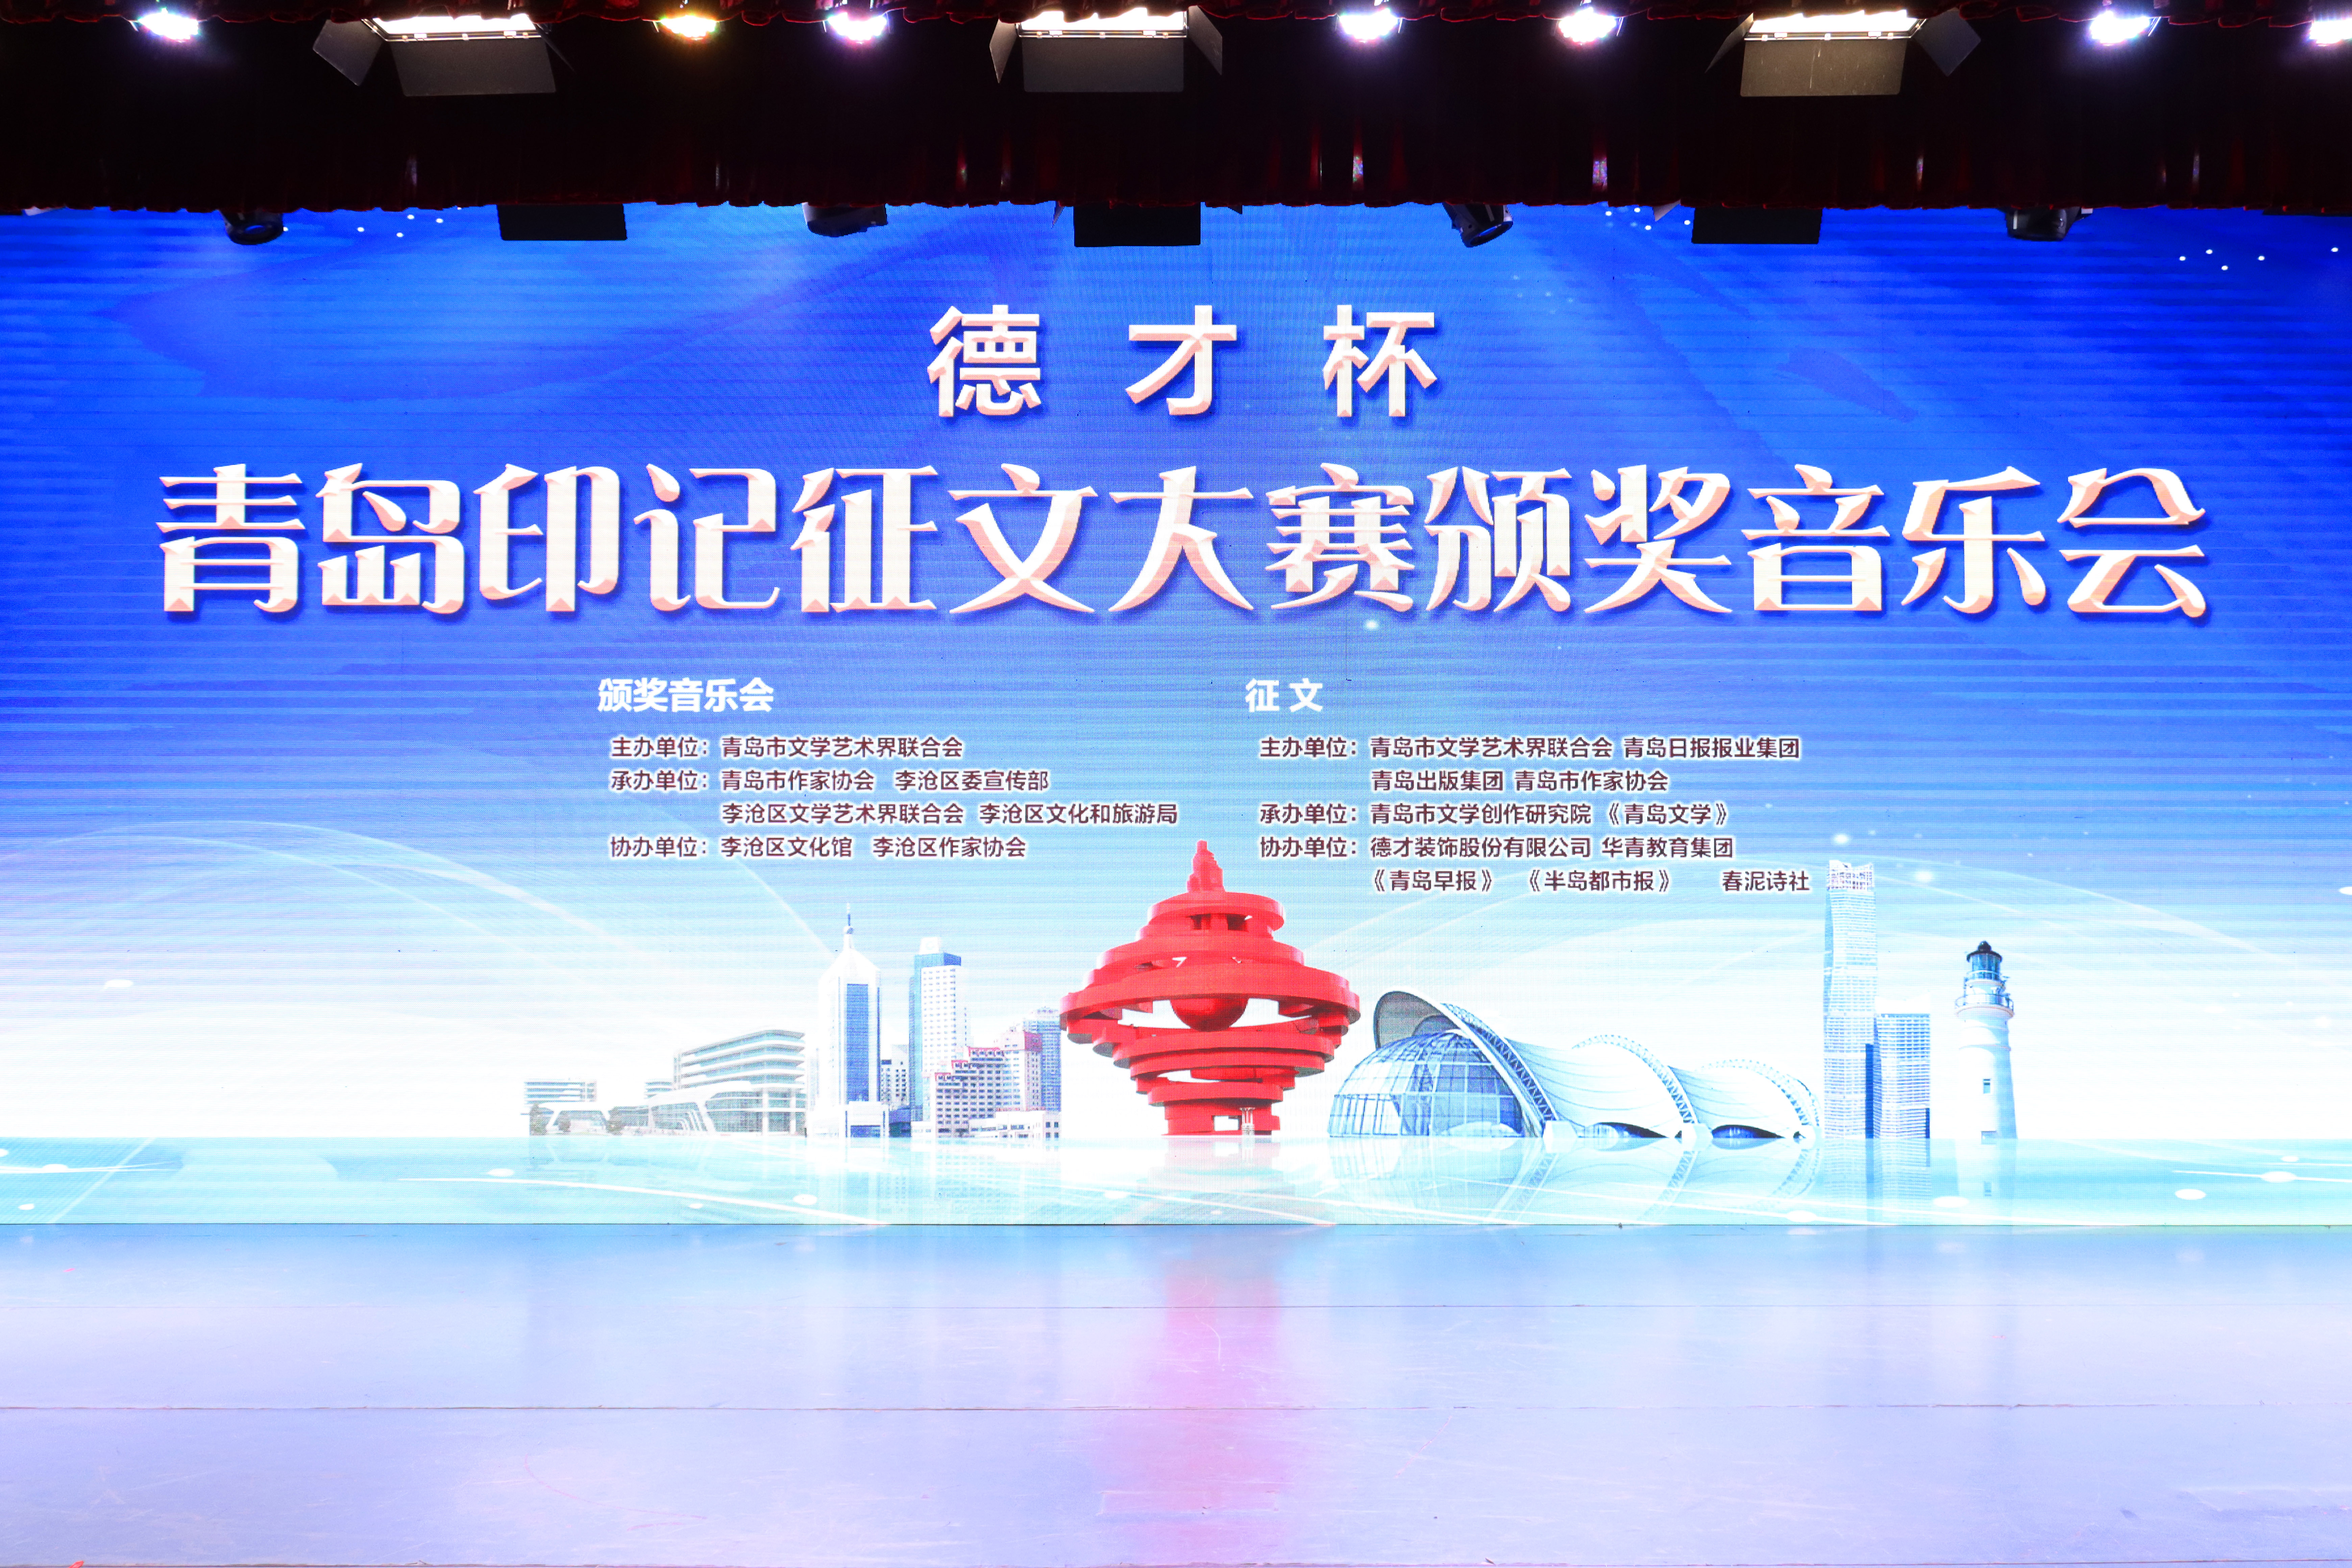 Decai shares co-organized Qingdao stamp essay contest